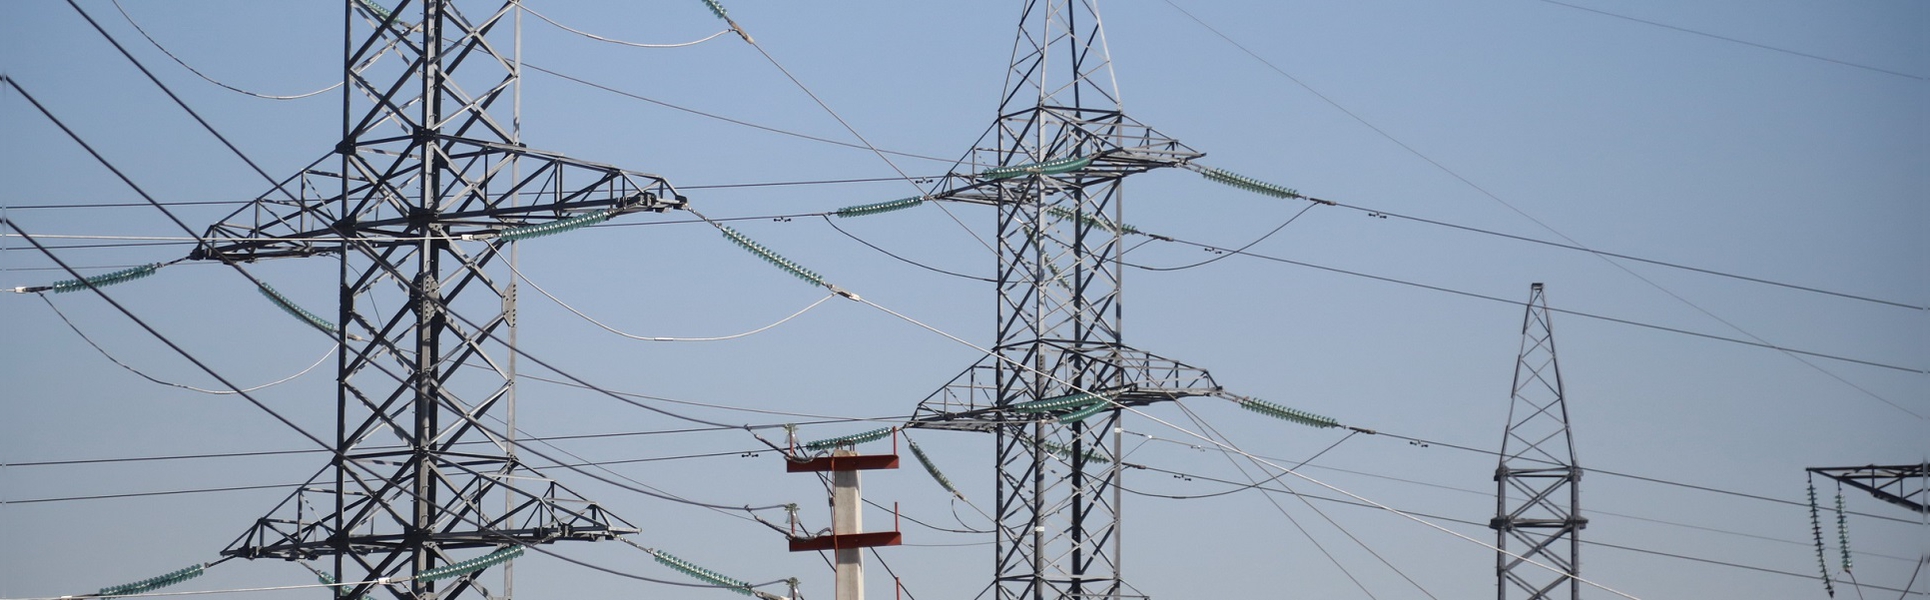 Энергодефицит в Иркутском районе устраняют: подключена подстанция в Столбова